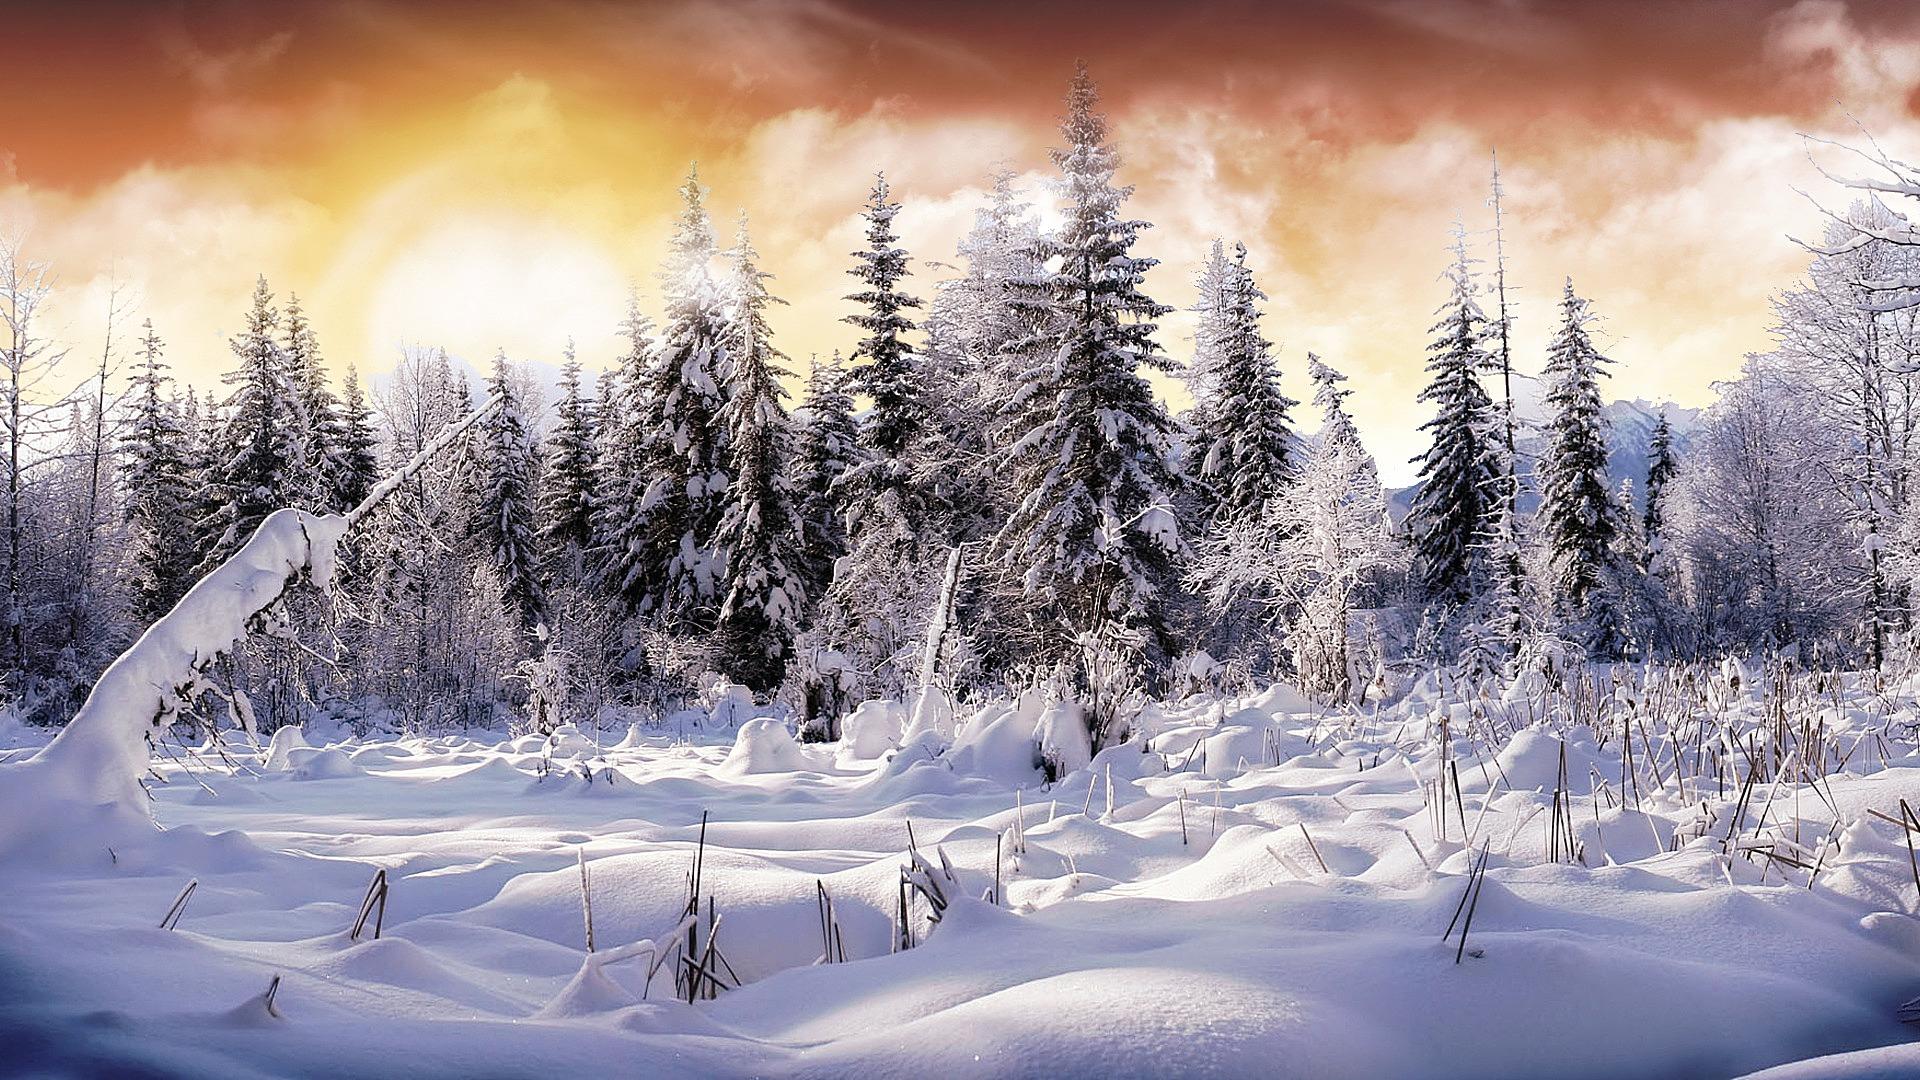 Обои Зимняя сказка Природа Зима, обои для рабочего стола, фотографии  зимняя, сказка, природа, зима, речка, лес, утро Обои для рабочего стола,  скачать обои картинки заставки на рабочий стол.